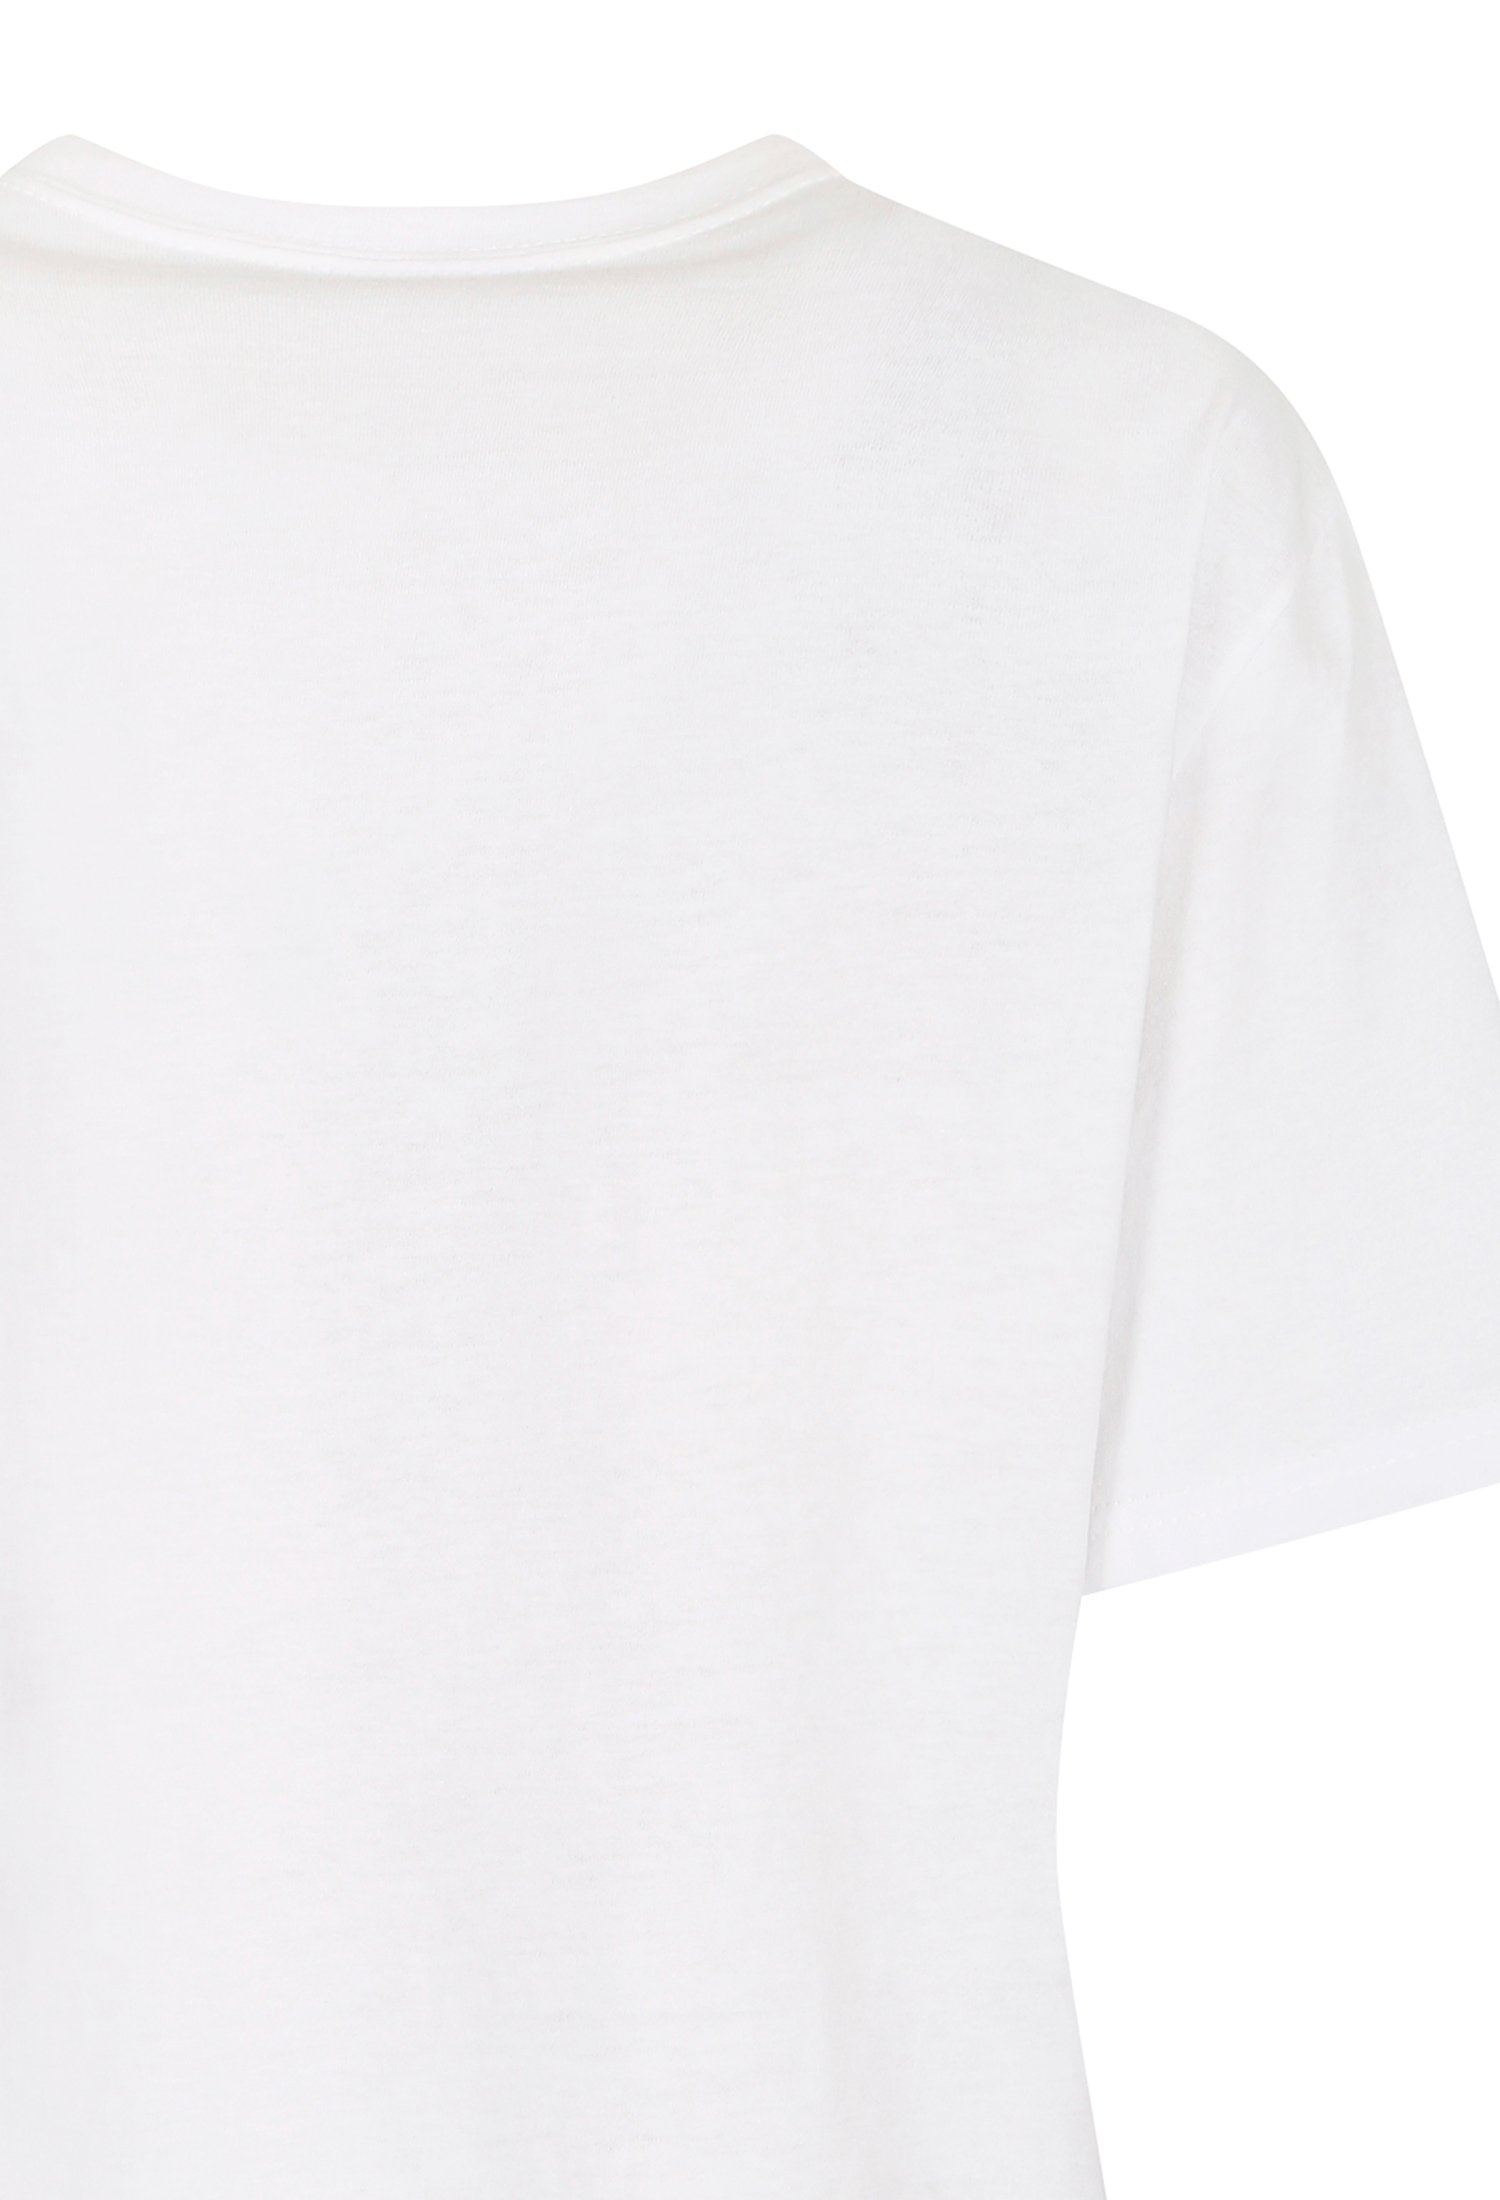 메탈릭 글리터 프린트 티셔츠 (WHITE)